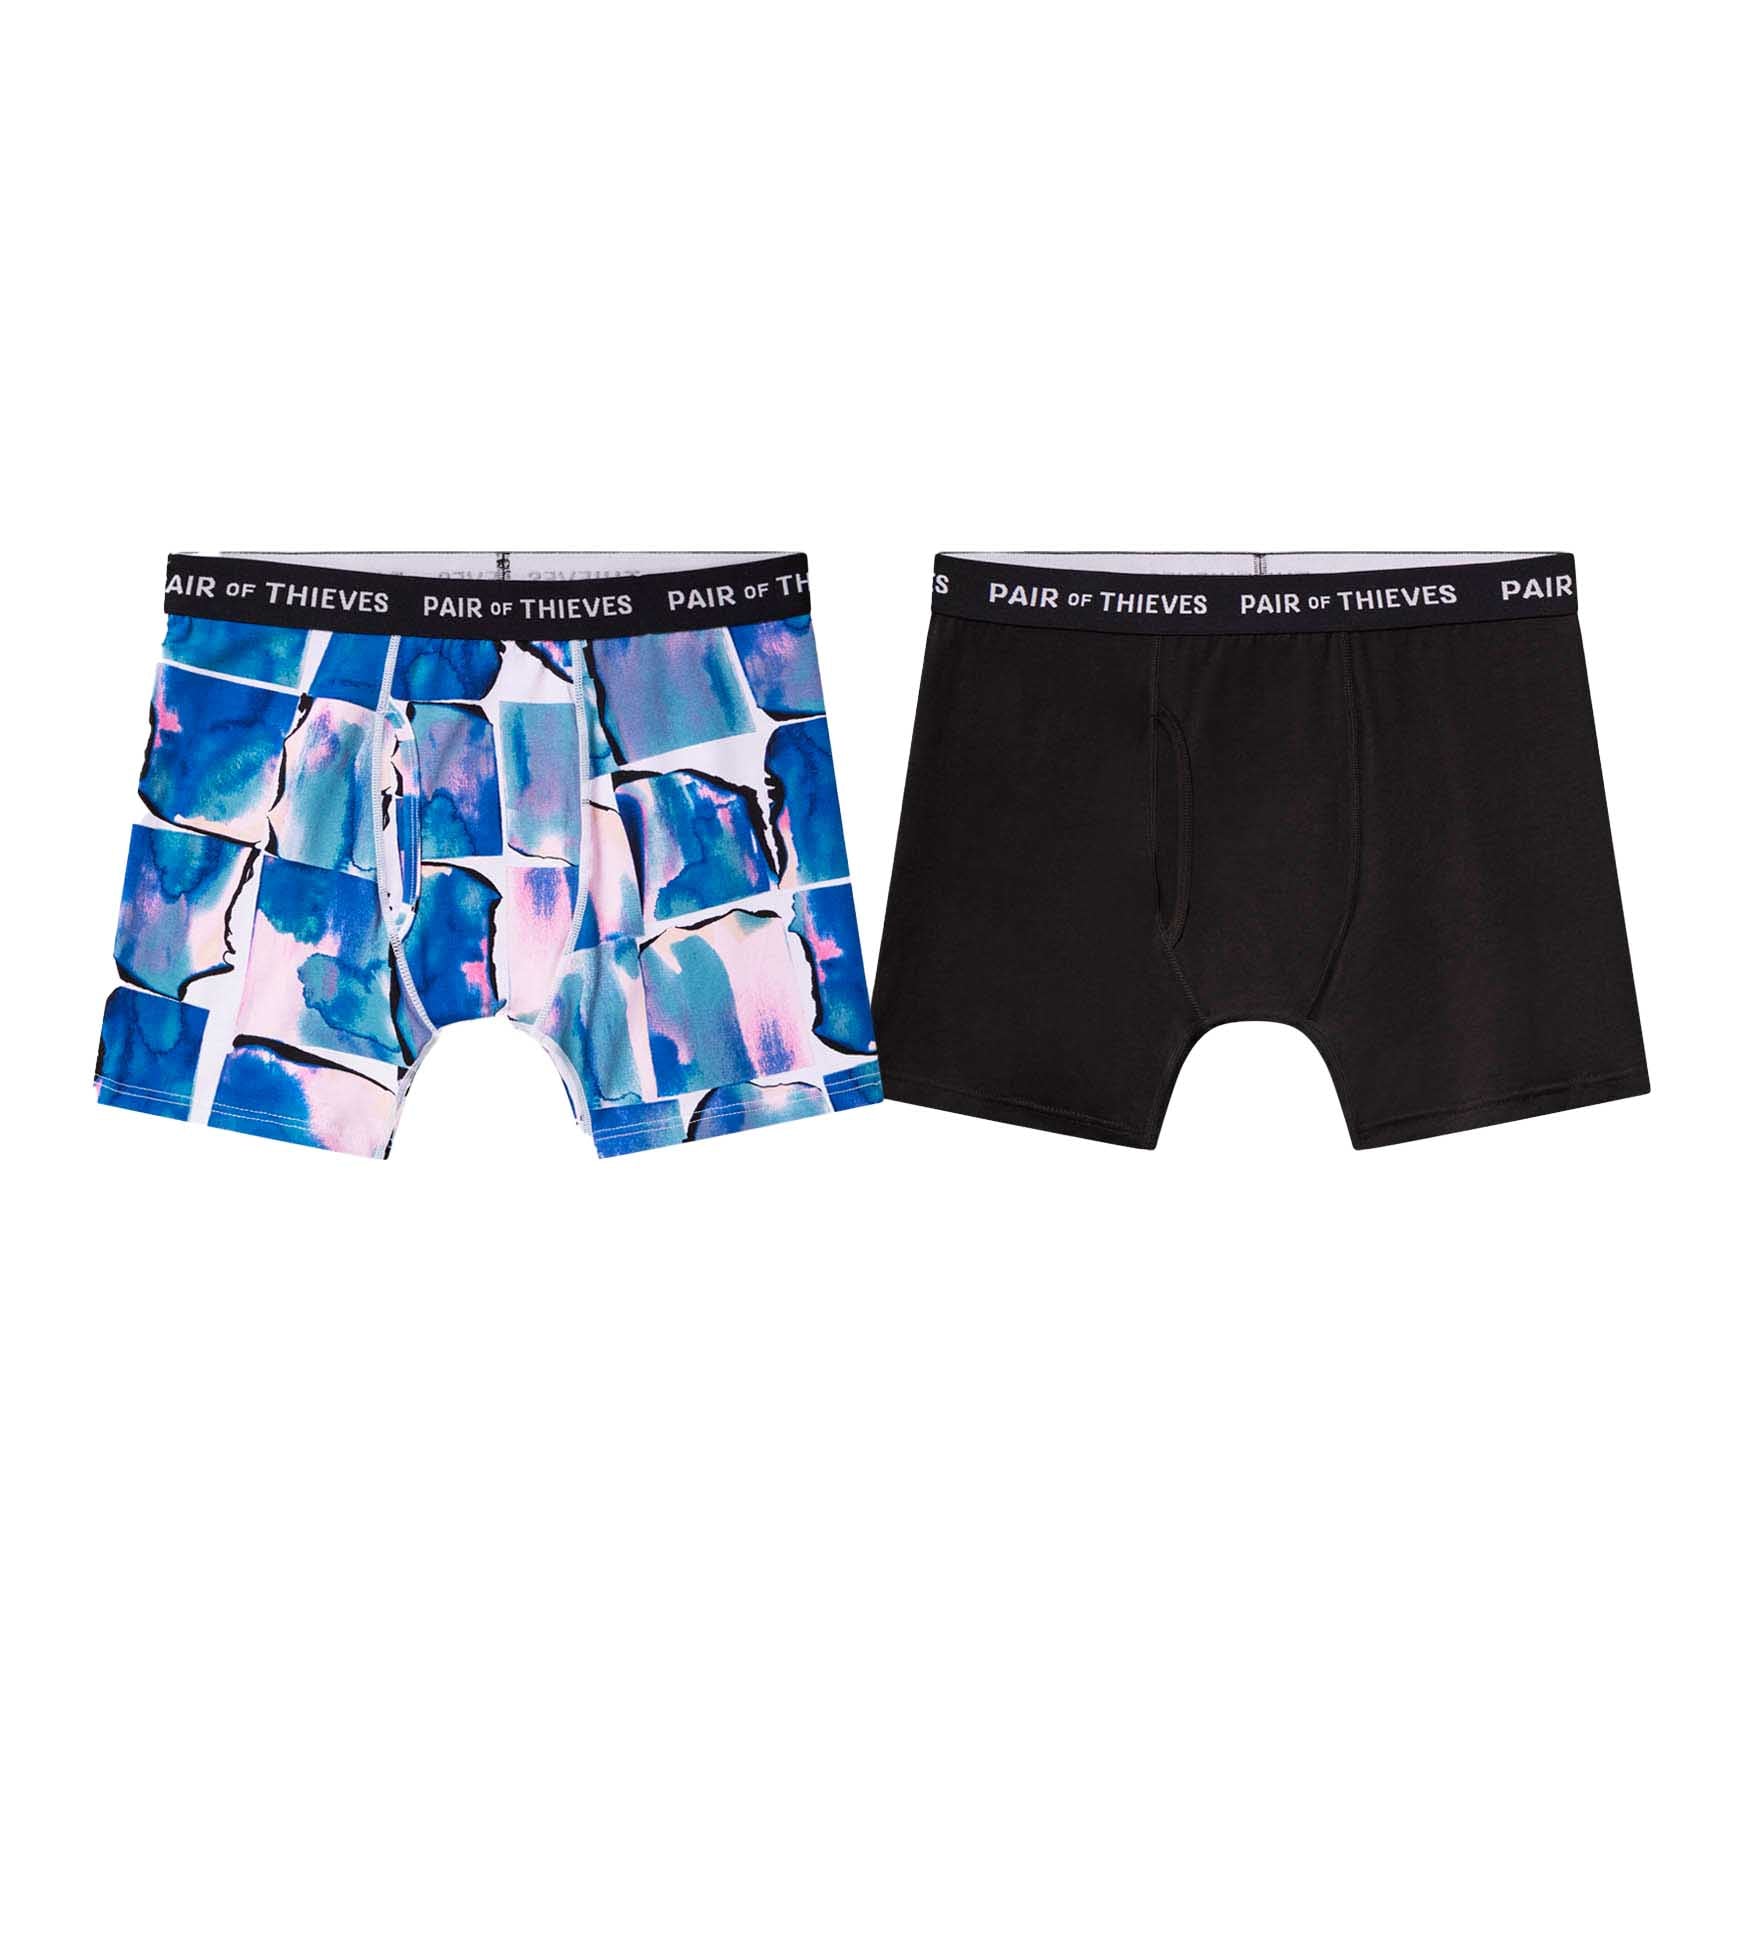 Pair of Thieves Men's Underwear Boxer Brief 2-Pack Size MEDIUM 31